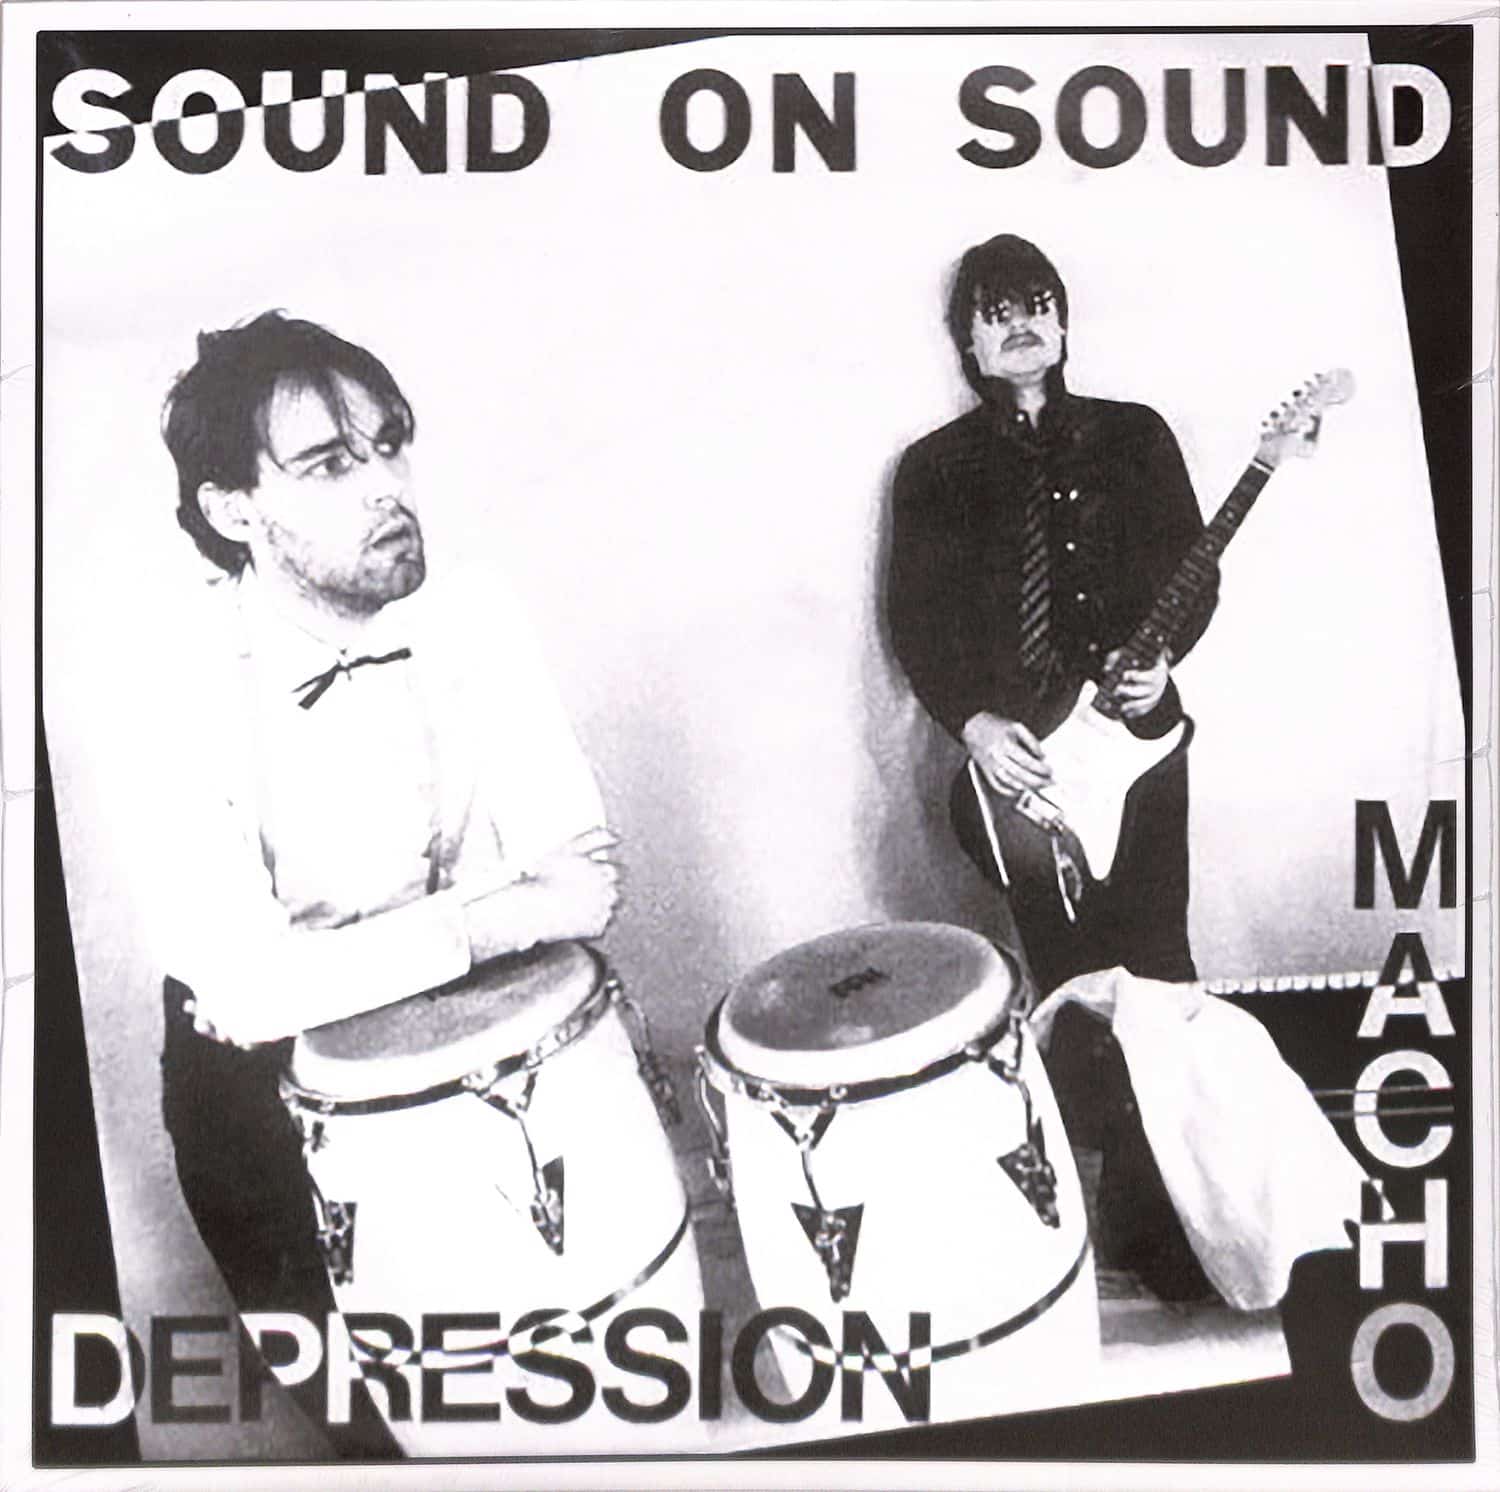 Sound On Sound - MACHO / DEPRESSION